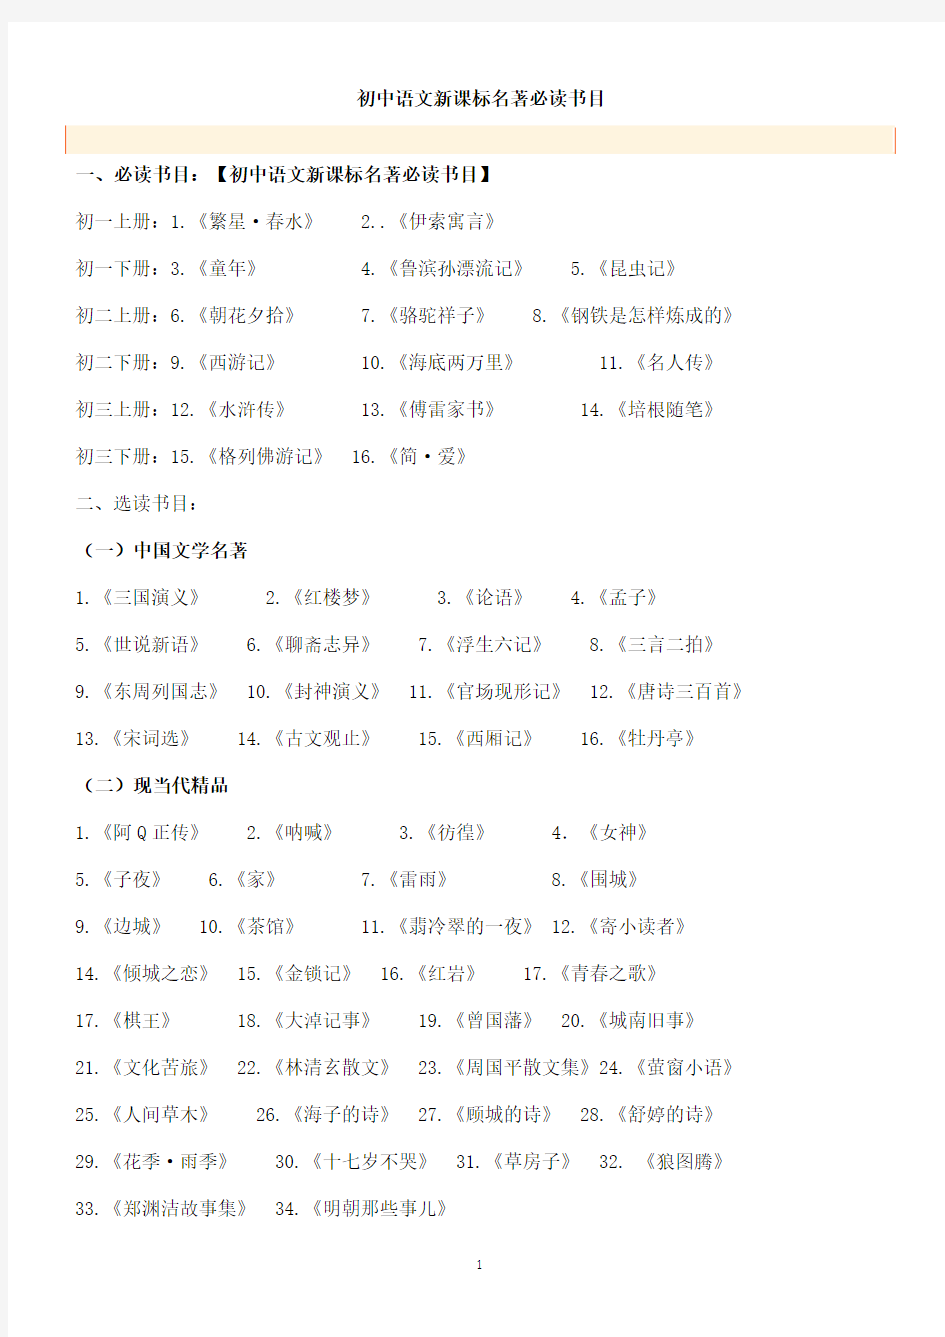 (完整)初中语文新课标名著必读书目总汇